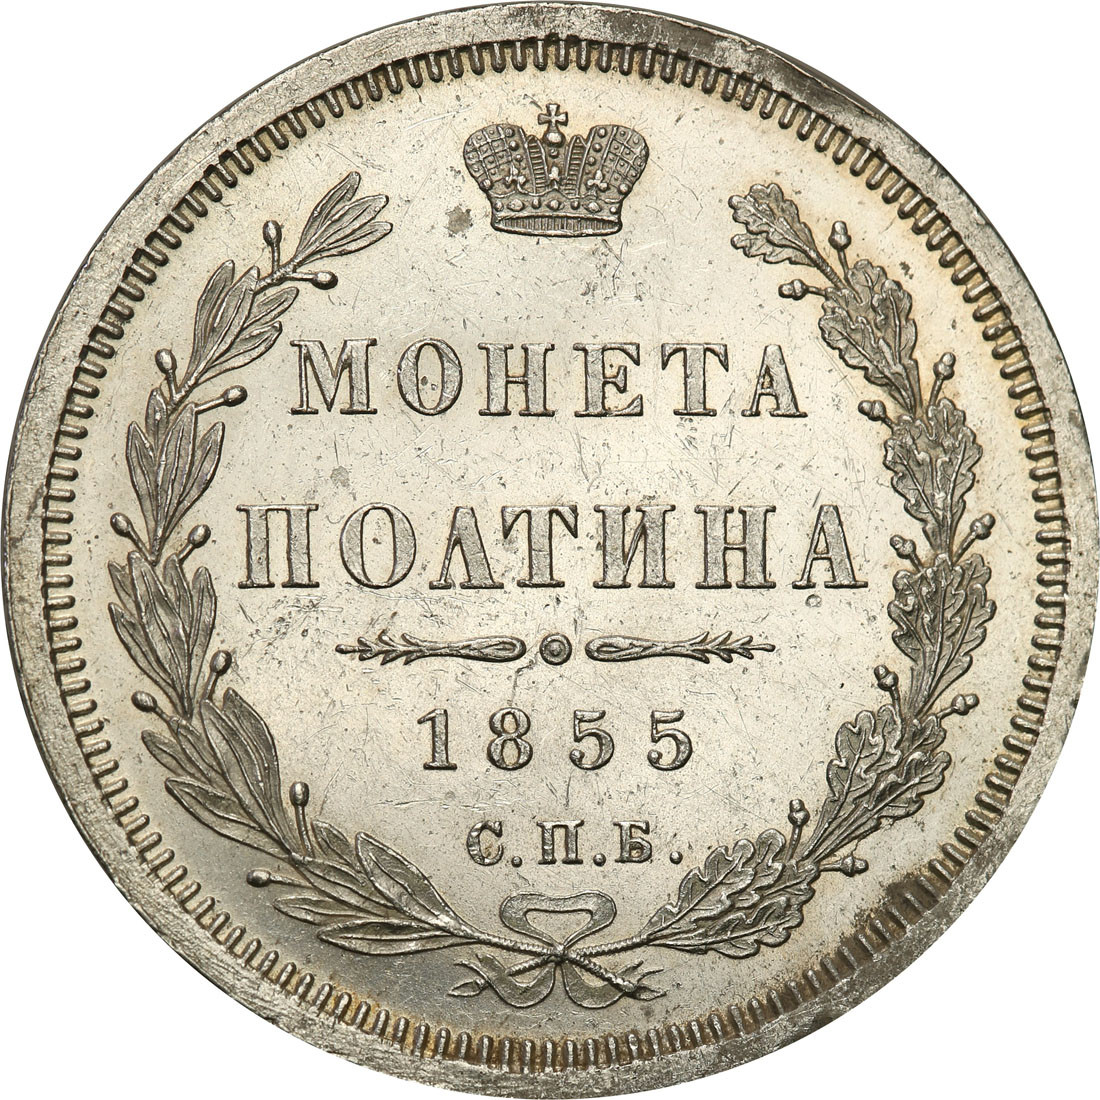 Rosja, Mikołaj l. Połtina (1/2 rubla) 1855, СПБ-HI, Petersburg - PIĘKNA